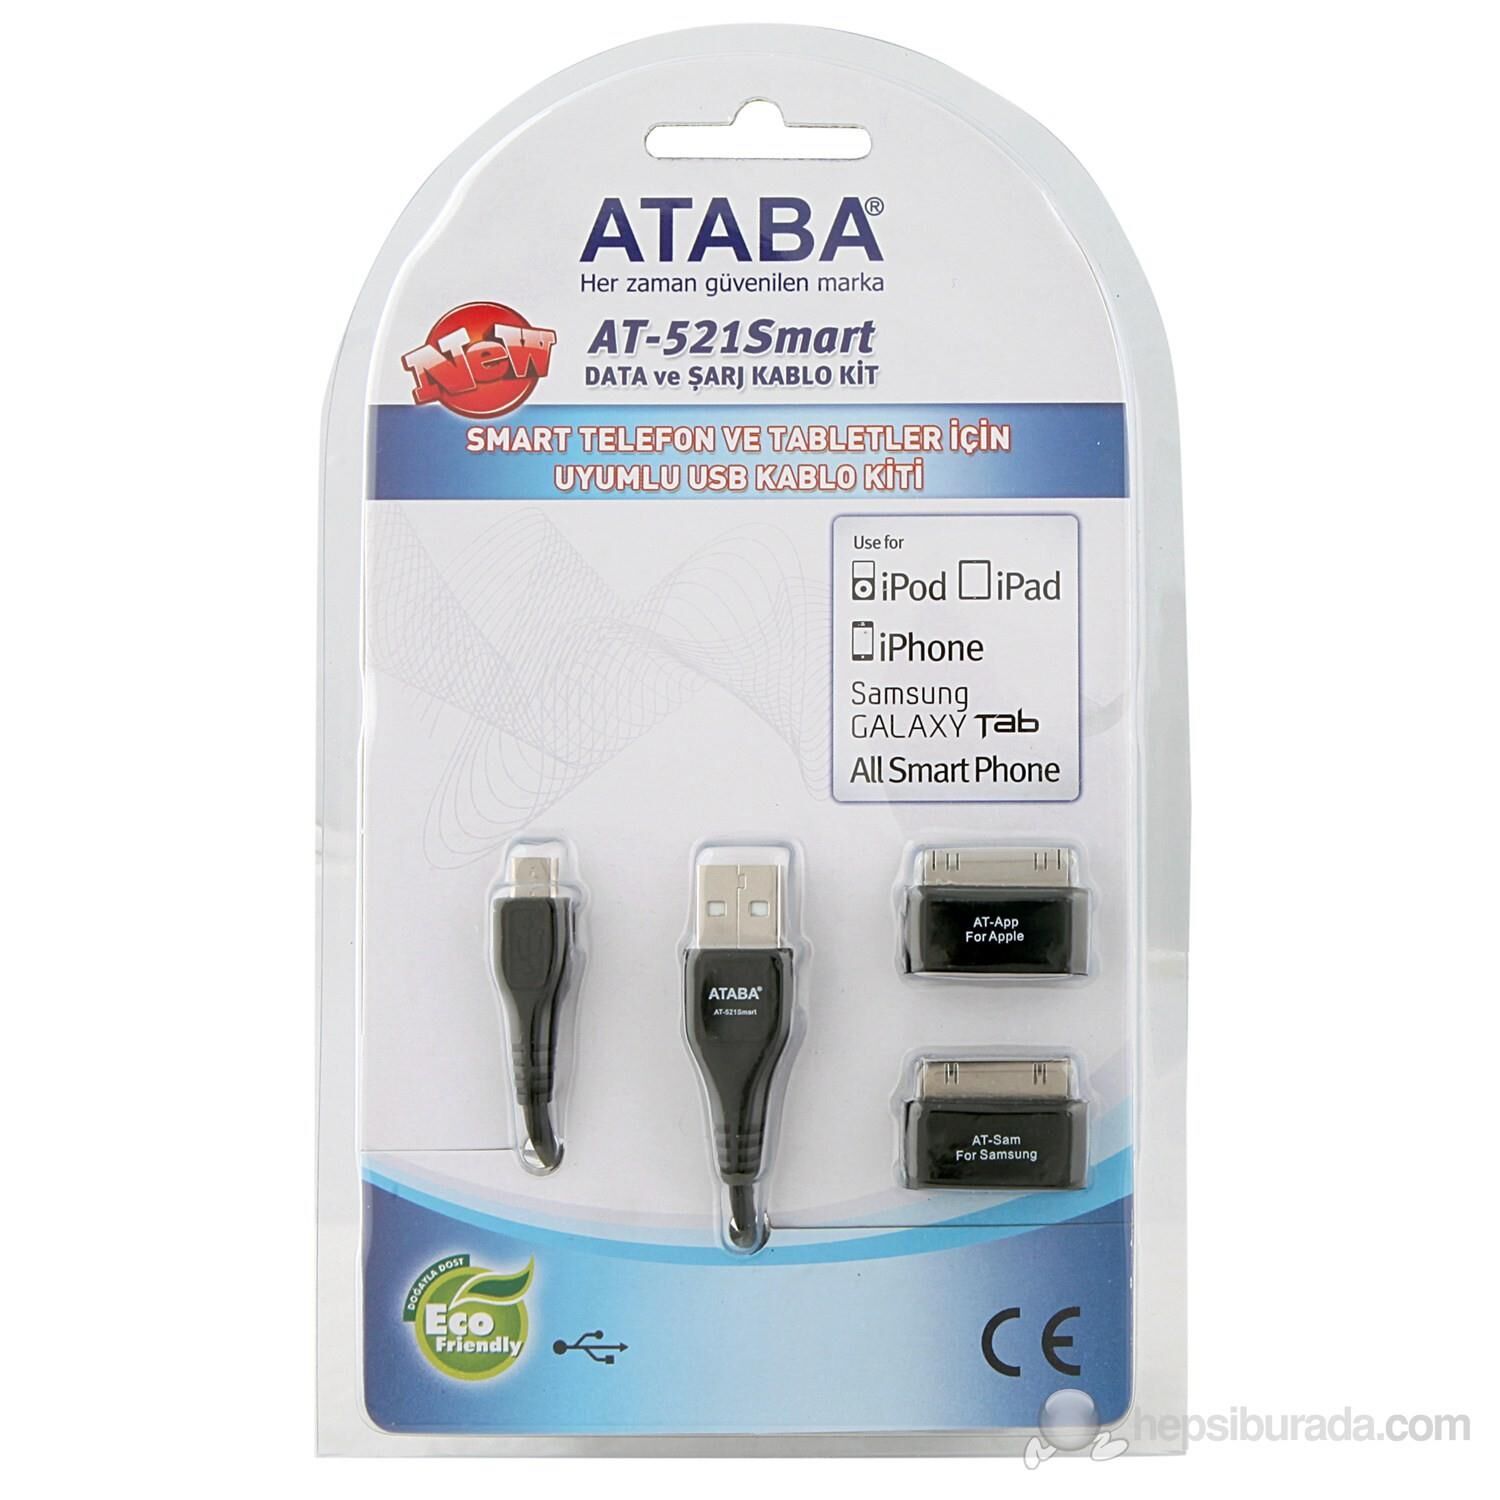 ATABA AT-521 TABLET USB KABLO